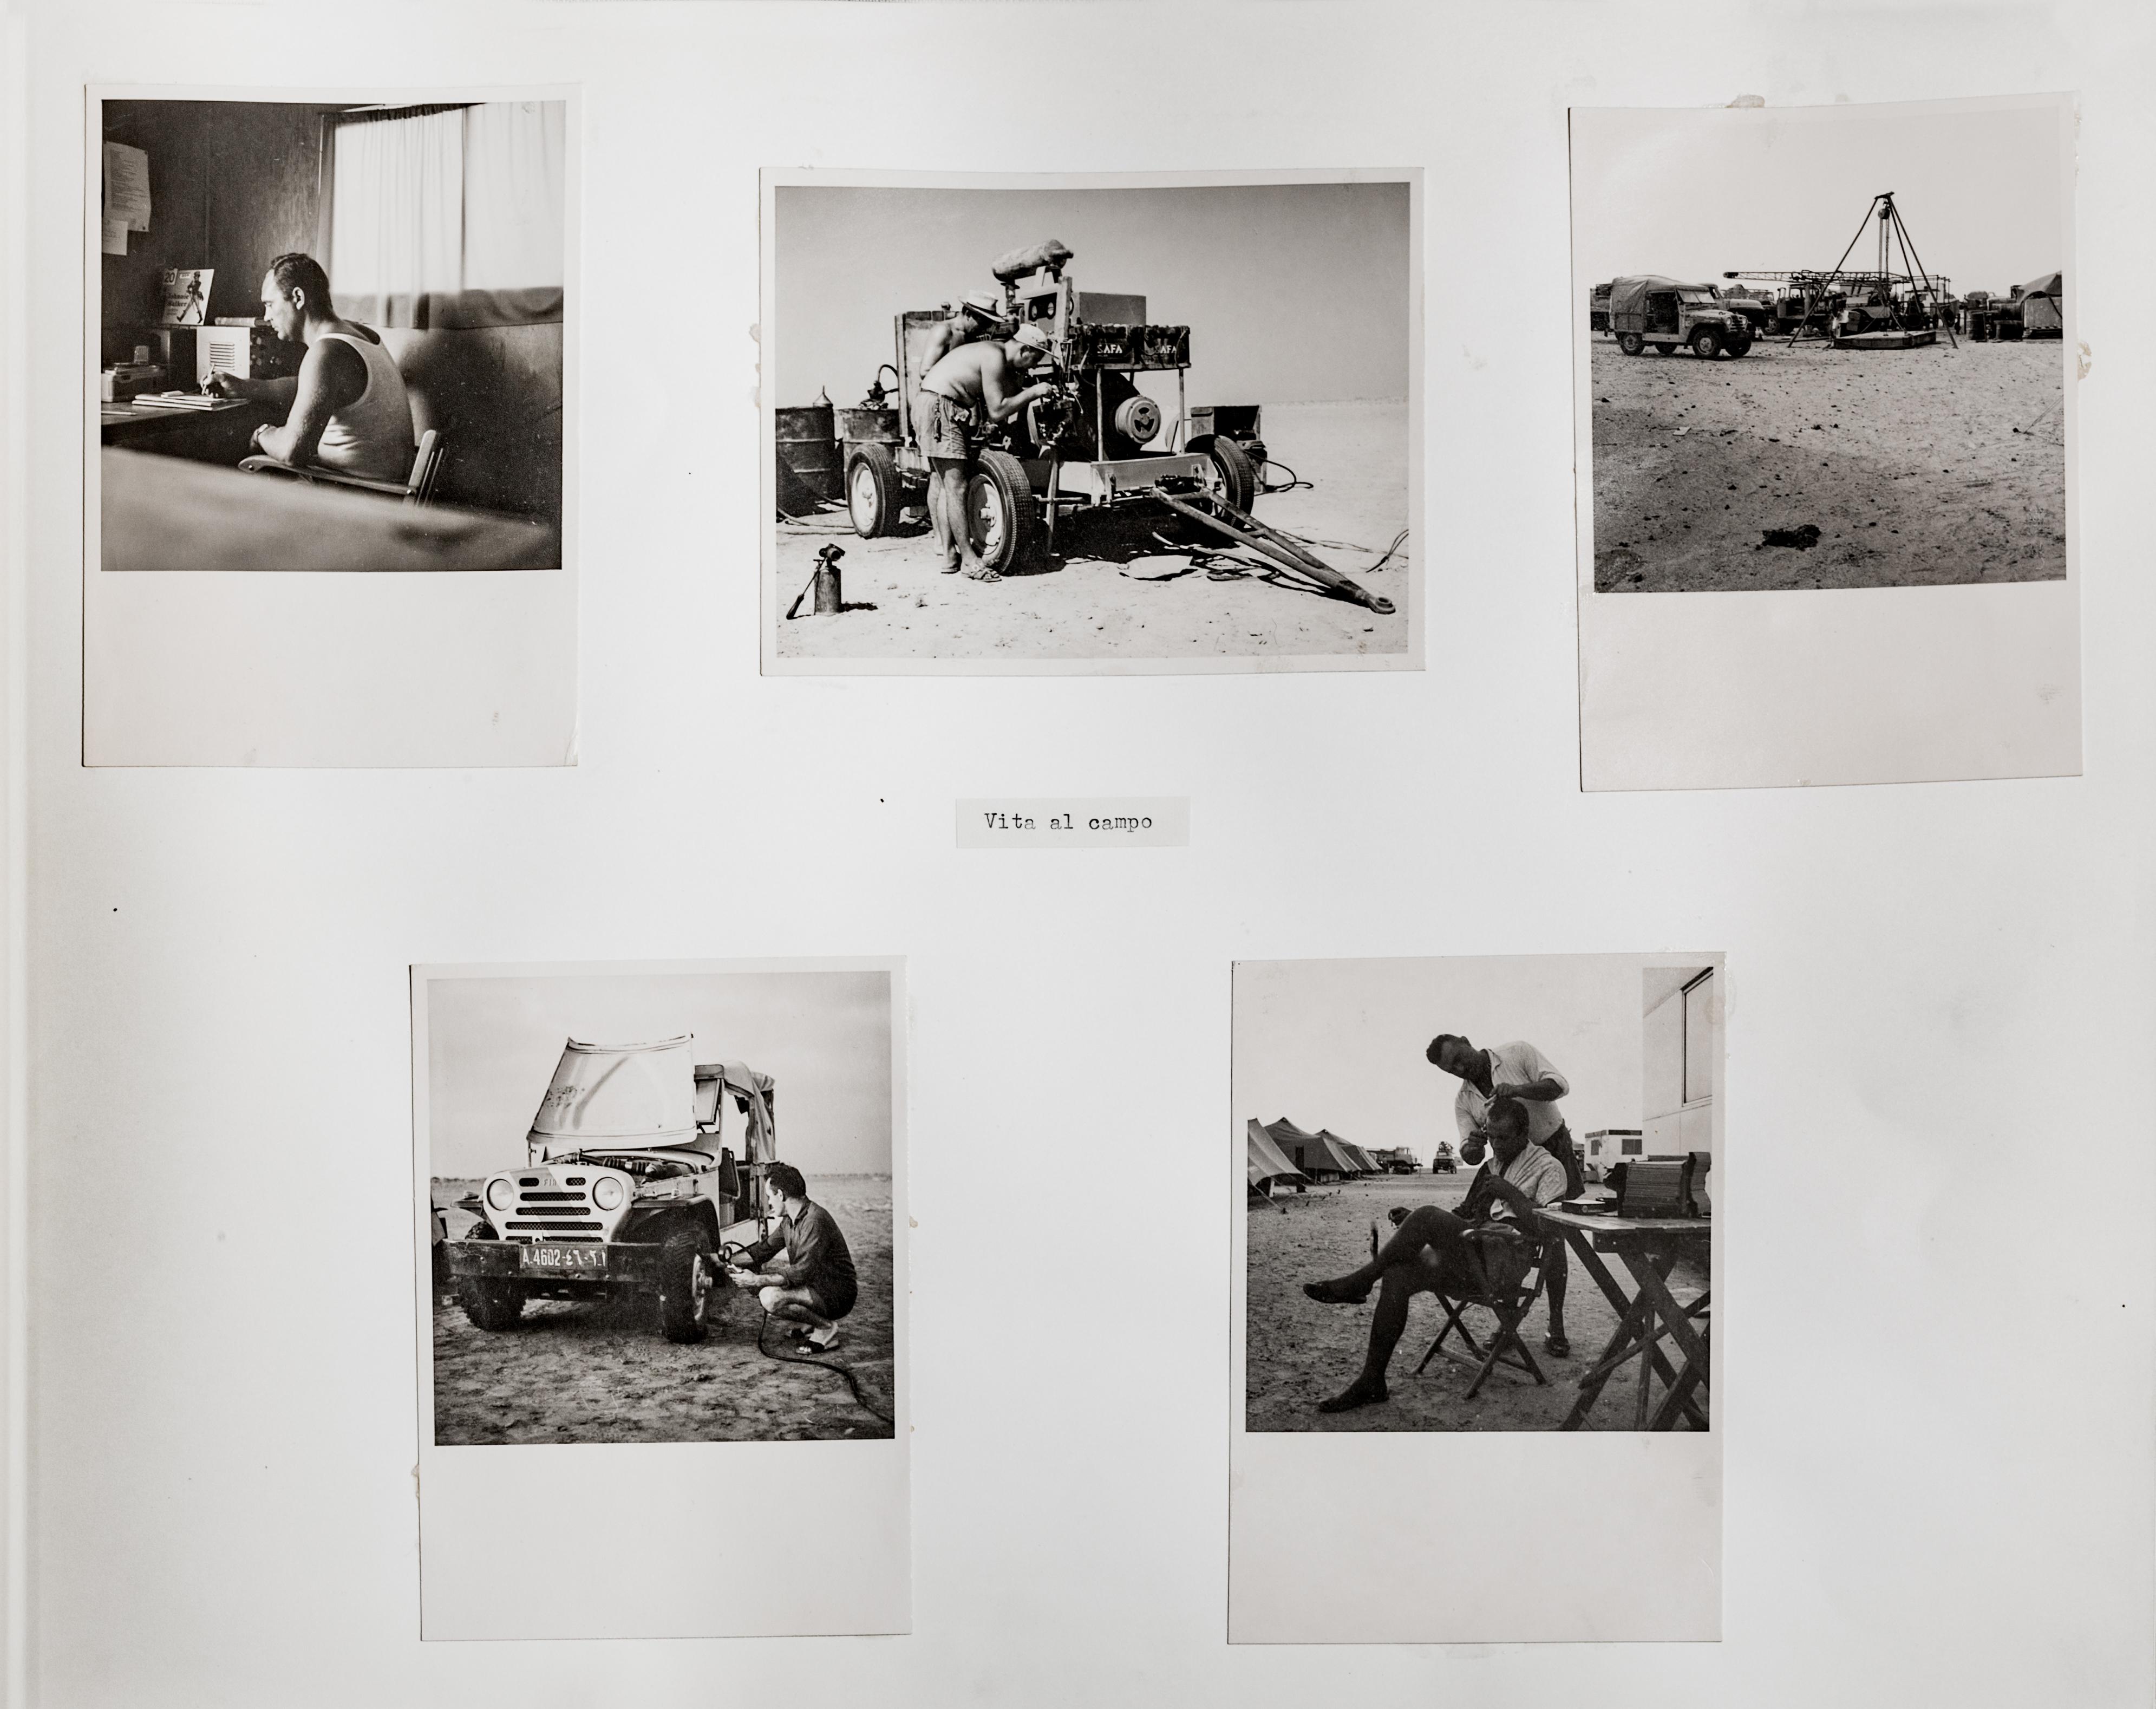 Momenti di vita quotidiana al campo dell’Agip mineraria. Sudan, 1960 (Archivio storico Eni)